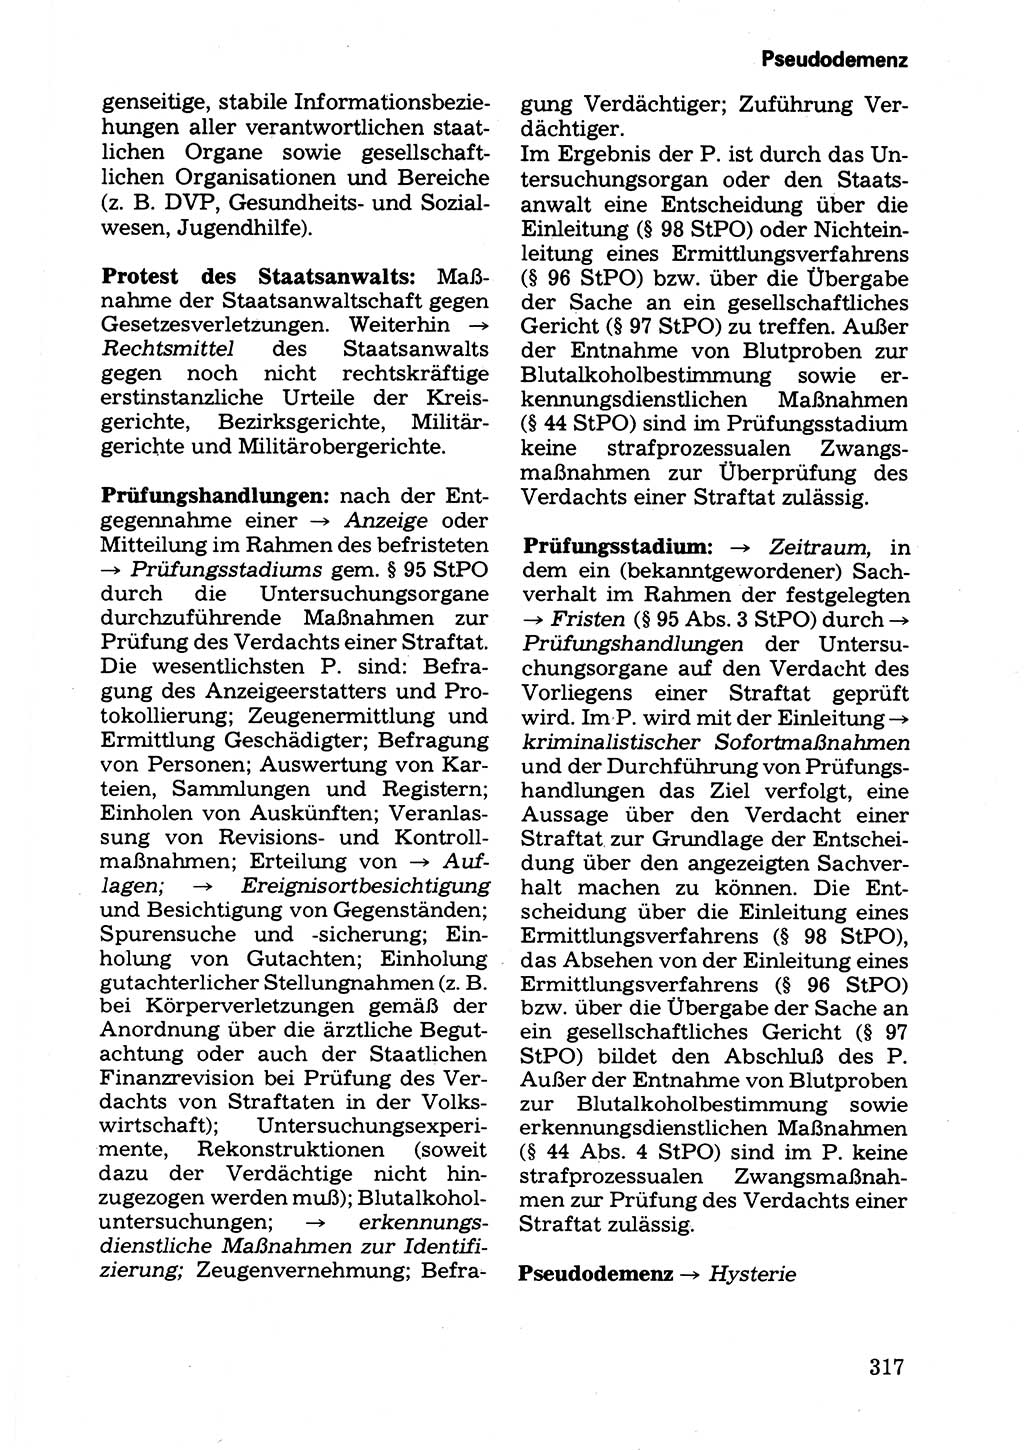 Wörterbuch der sozialistischen Kriminalistik [Deutsche Demokratische Republik (DDR)] 1981, Seite 317 (Wb. soz. Krim. DDR 1981, S. 317)